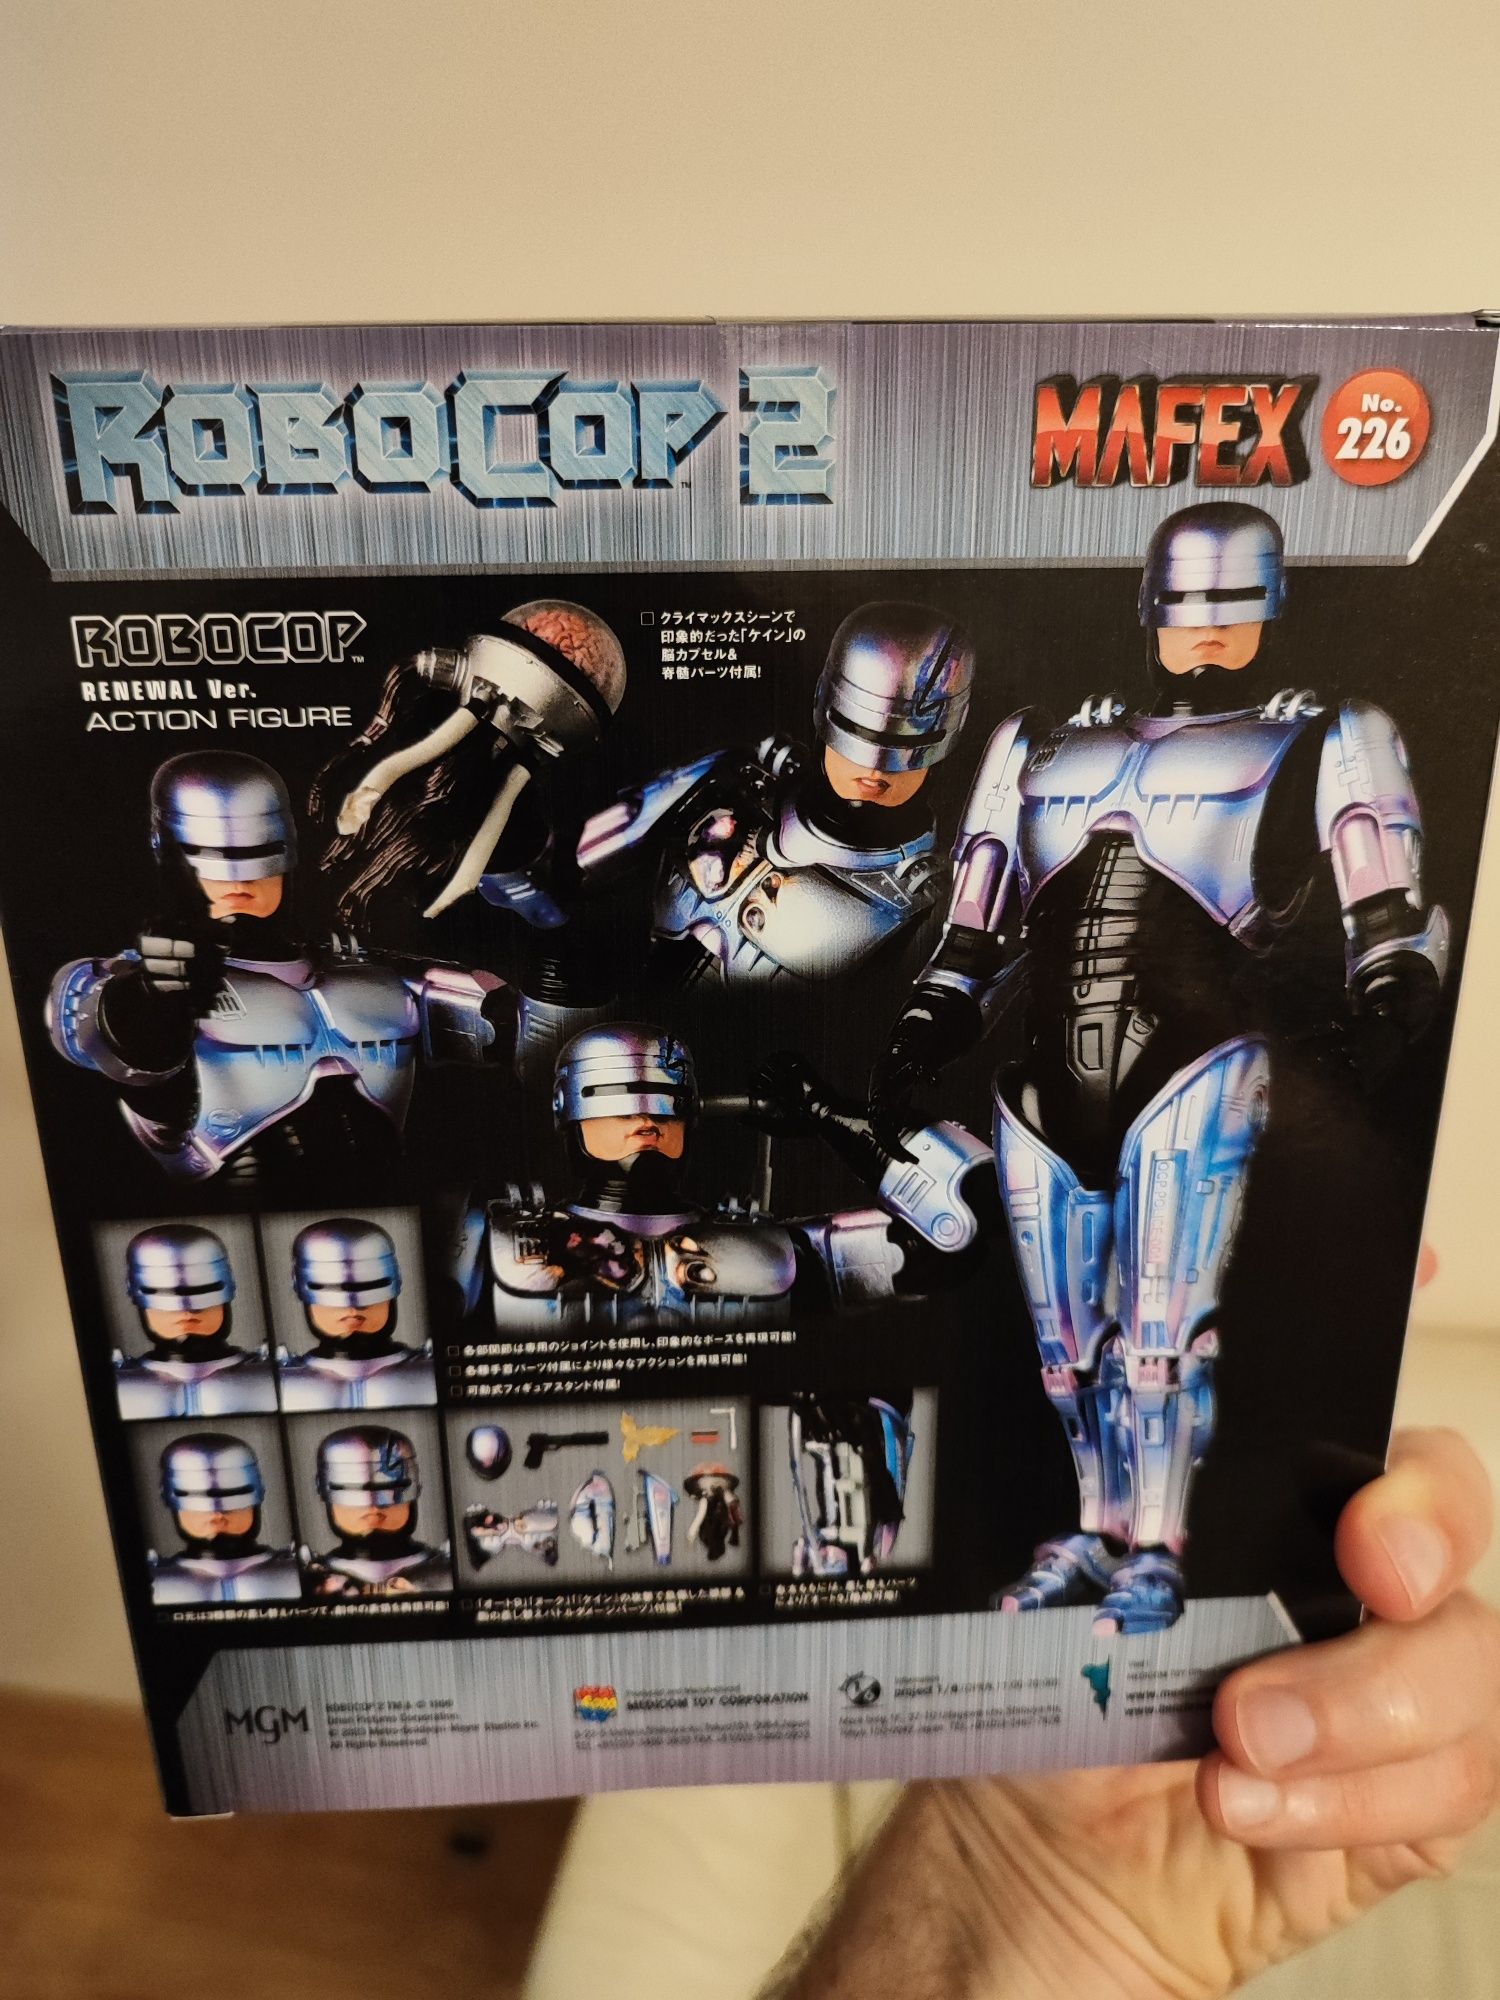 Figurka Mafex Medicom Toy Robocop 2, nie Neca